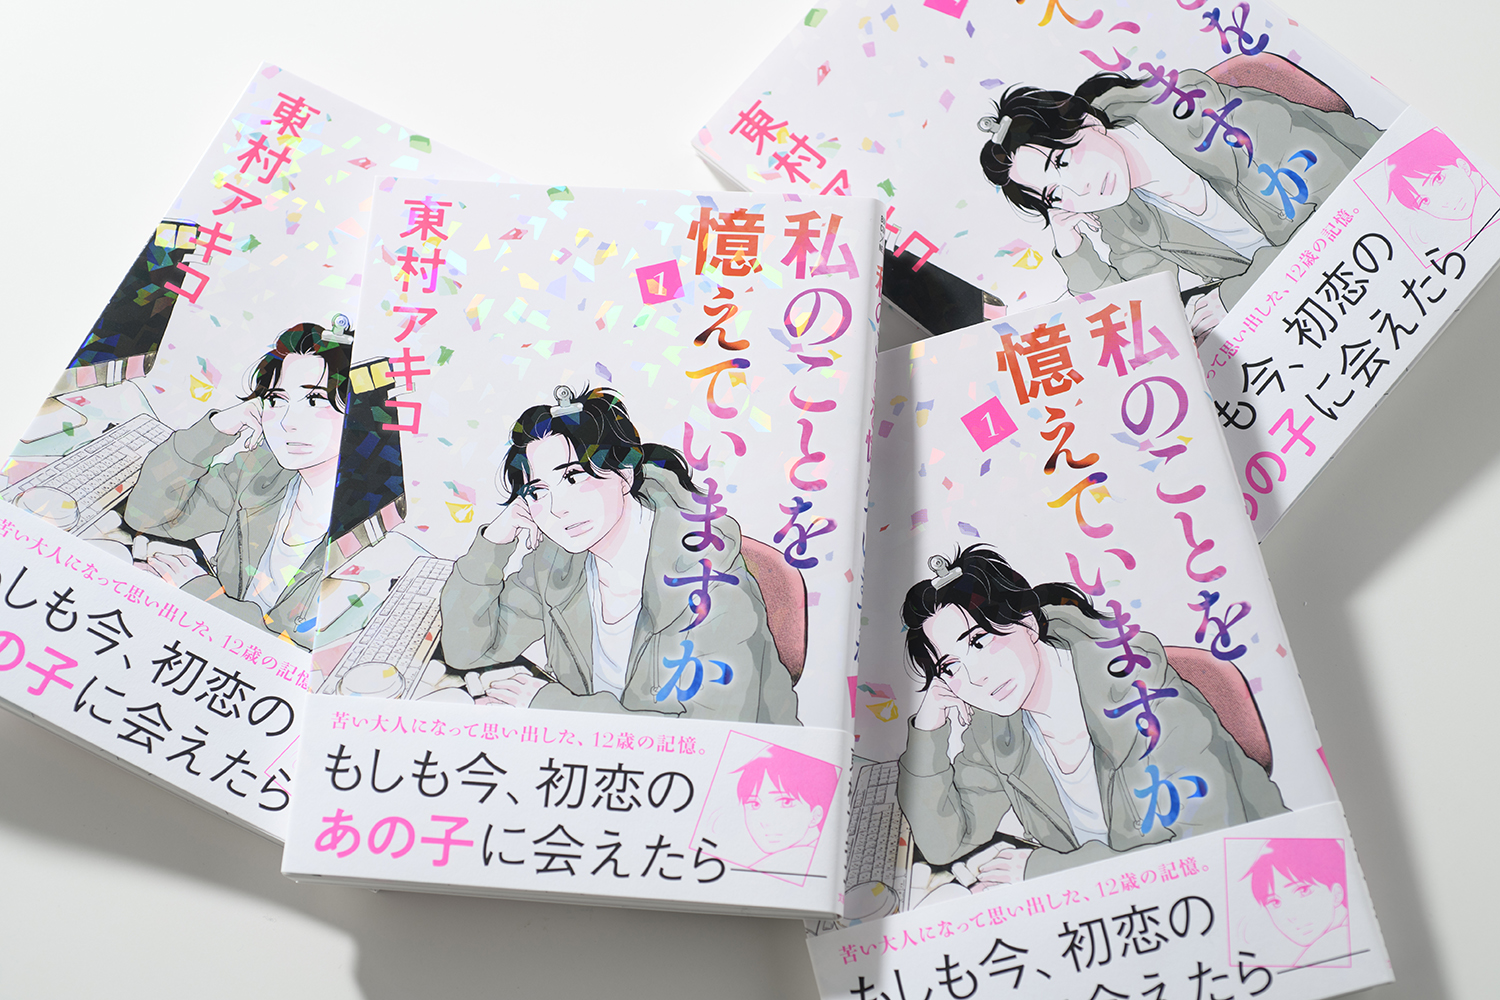 東村アキコ最新作は超胸キュンな初恋物語 輝くホロ加工をまとった 私のことを憶えていますか 第1巻刊行 ニュース 本の話